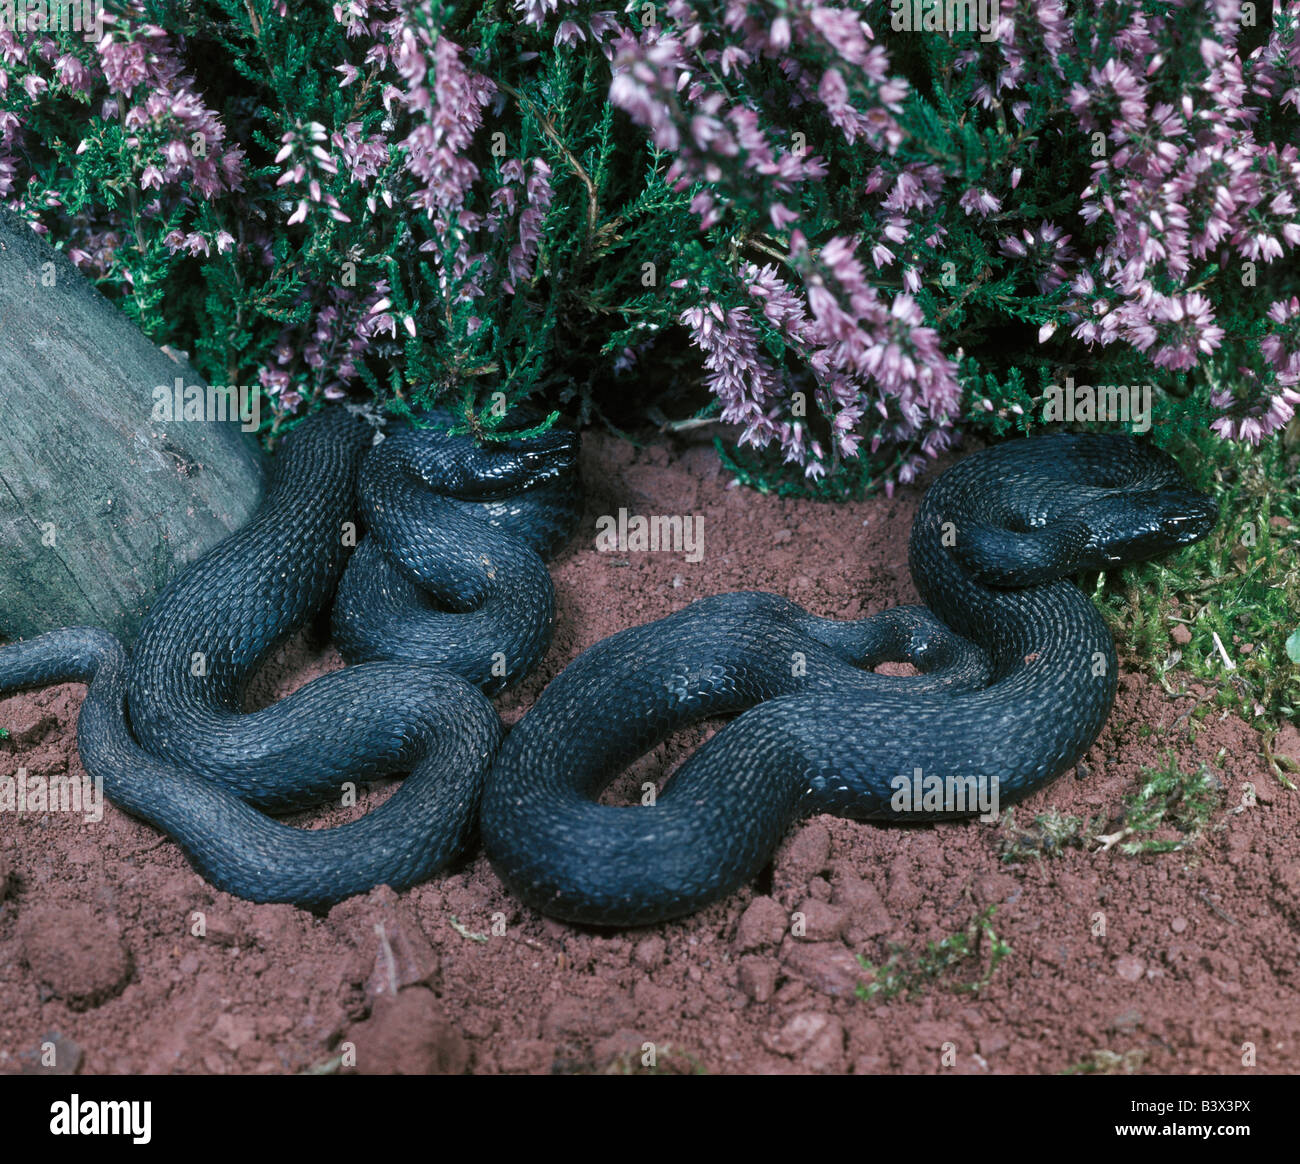 La serpiente, Vipera berus, serpiente, víbora europea Foto de stock